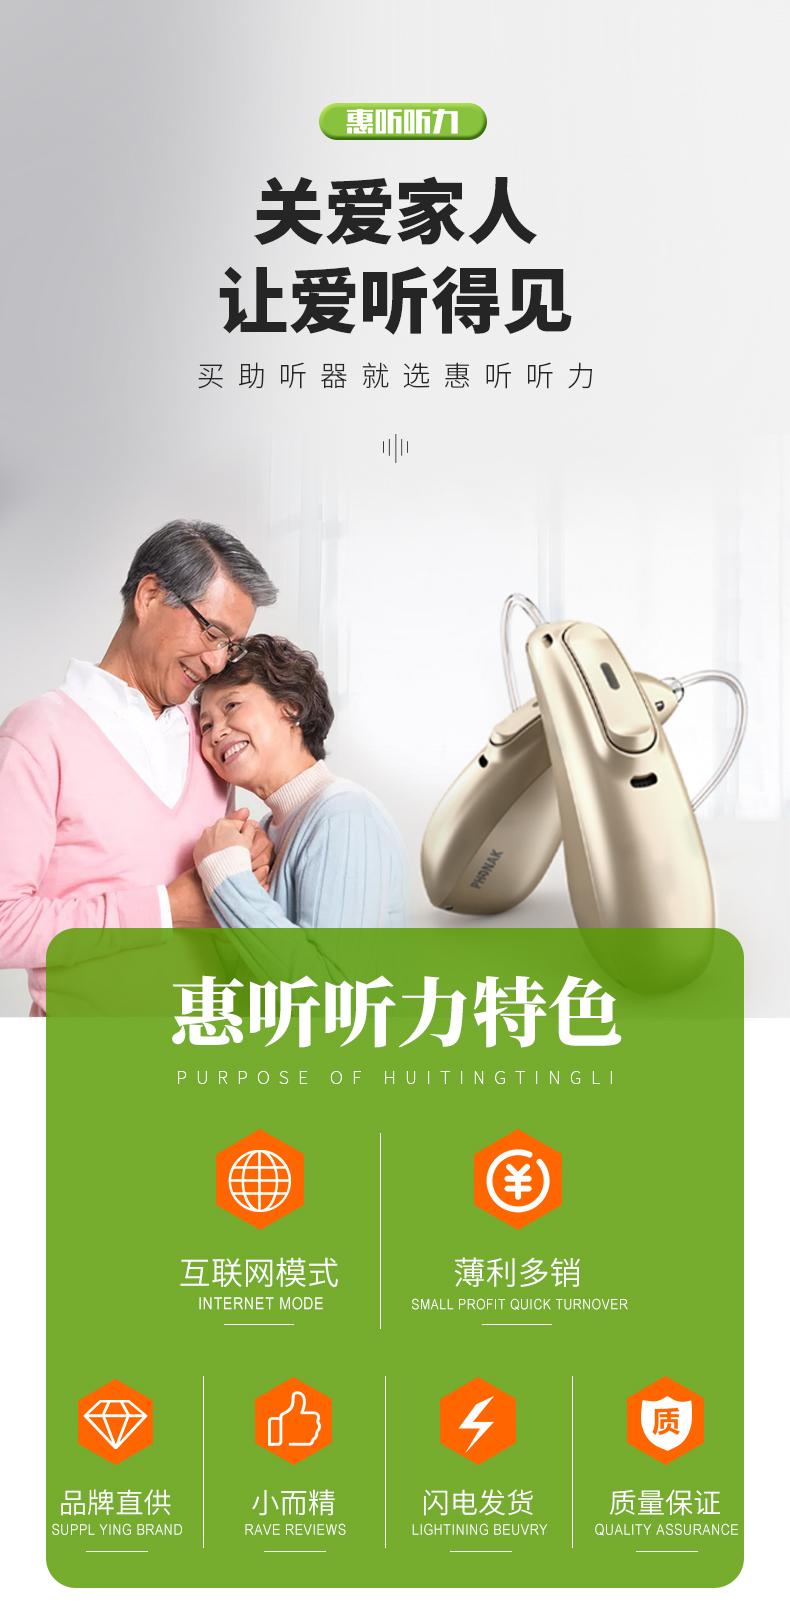 上海助听器实体店地址 西门子助听器 西嘉助听器 真我助听器效果 助听器好用吗